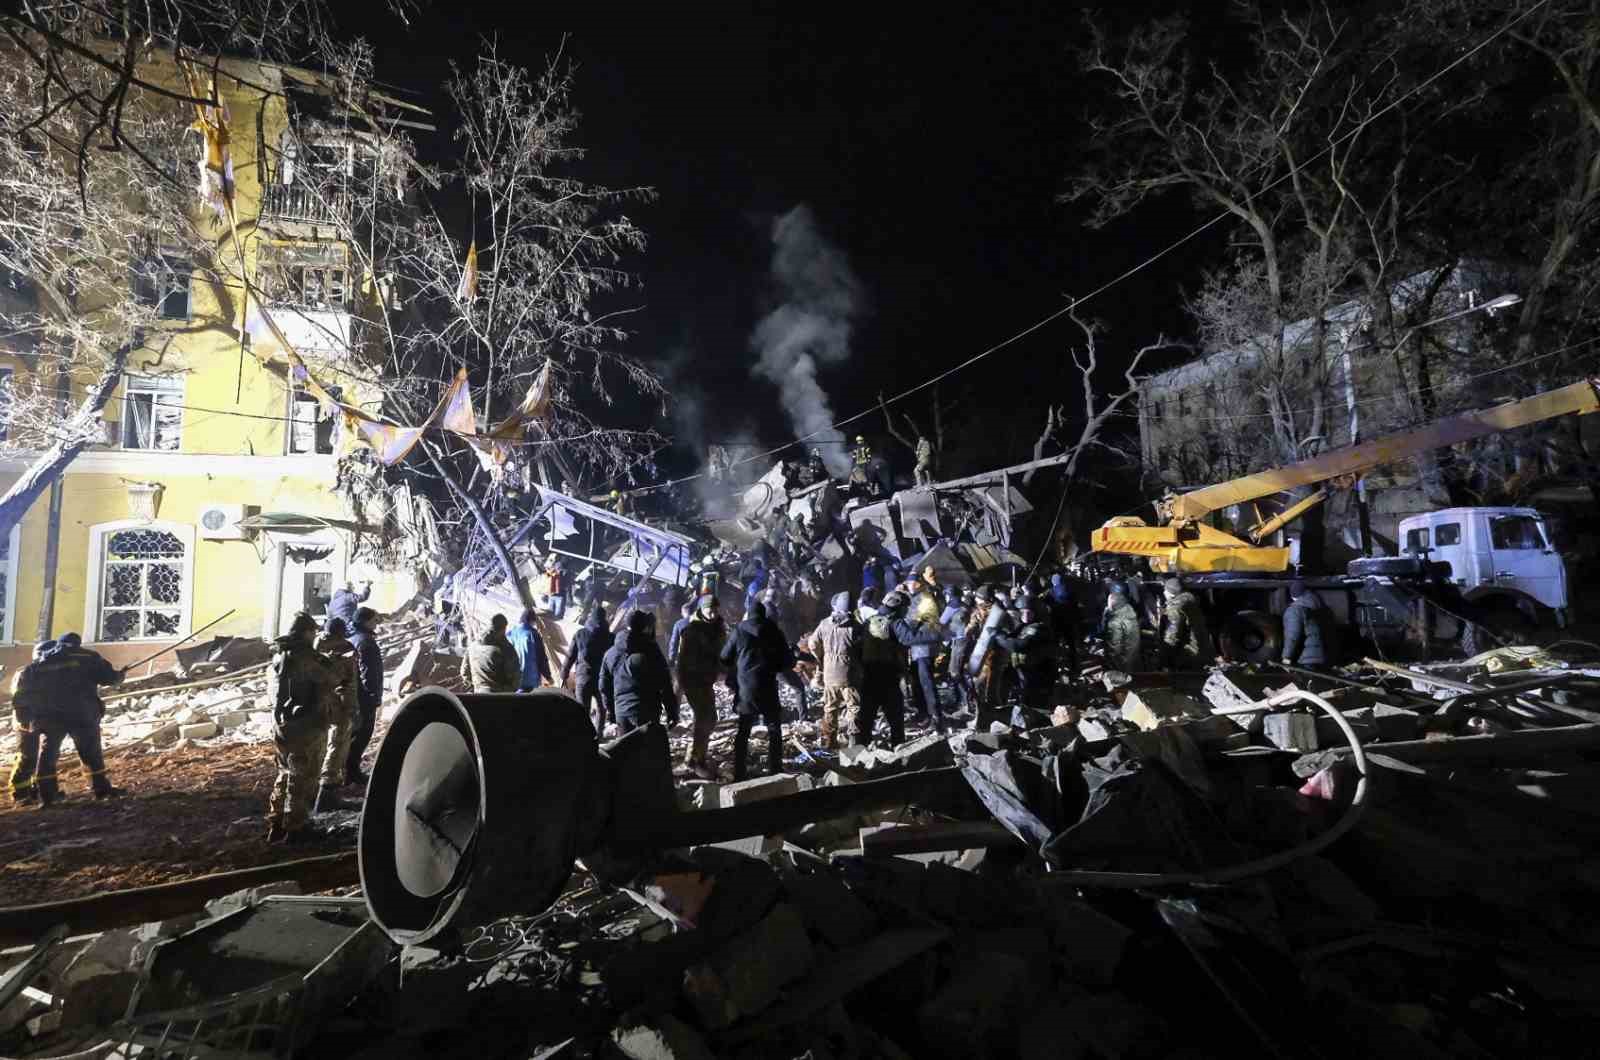 Rusya, Kramatorsk’ta apartmanı vurdu: 3 ölü, 20 yaralı